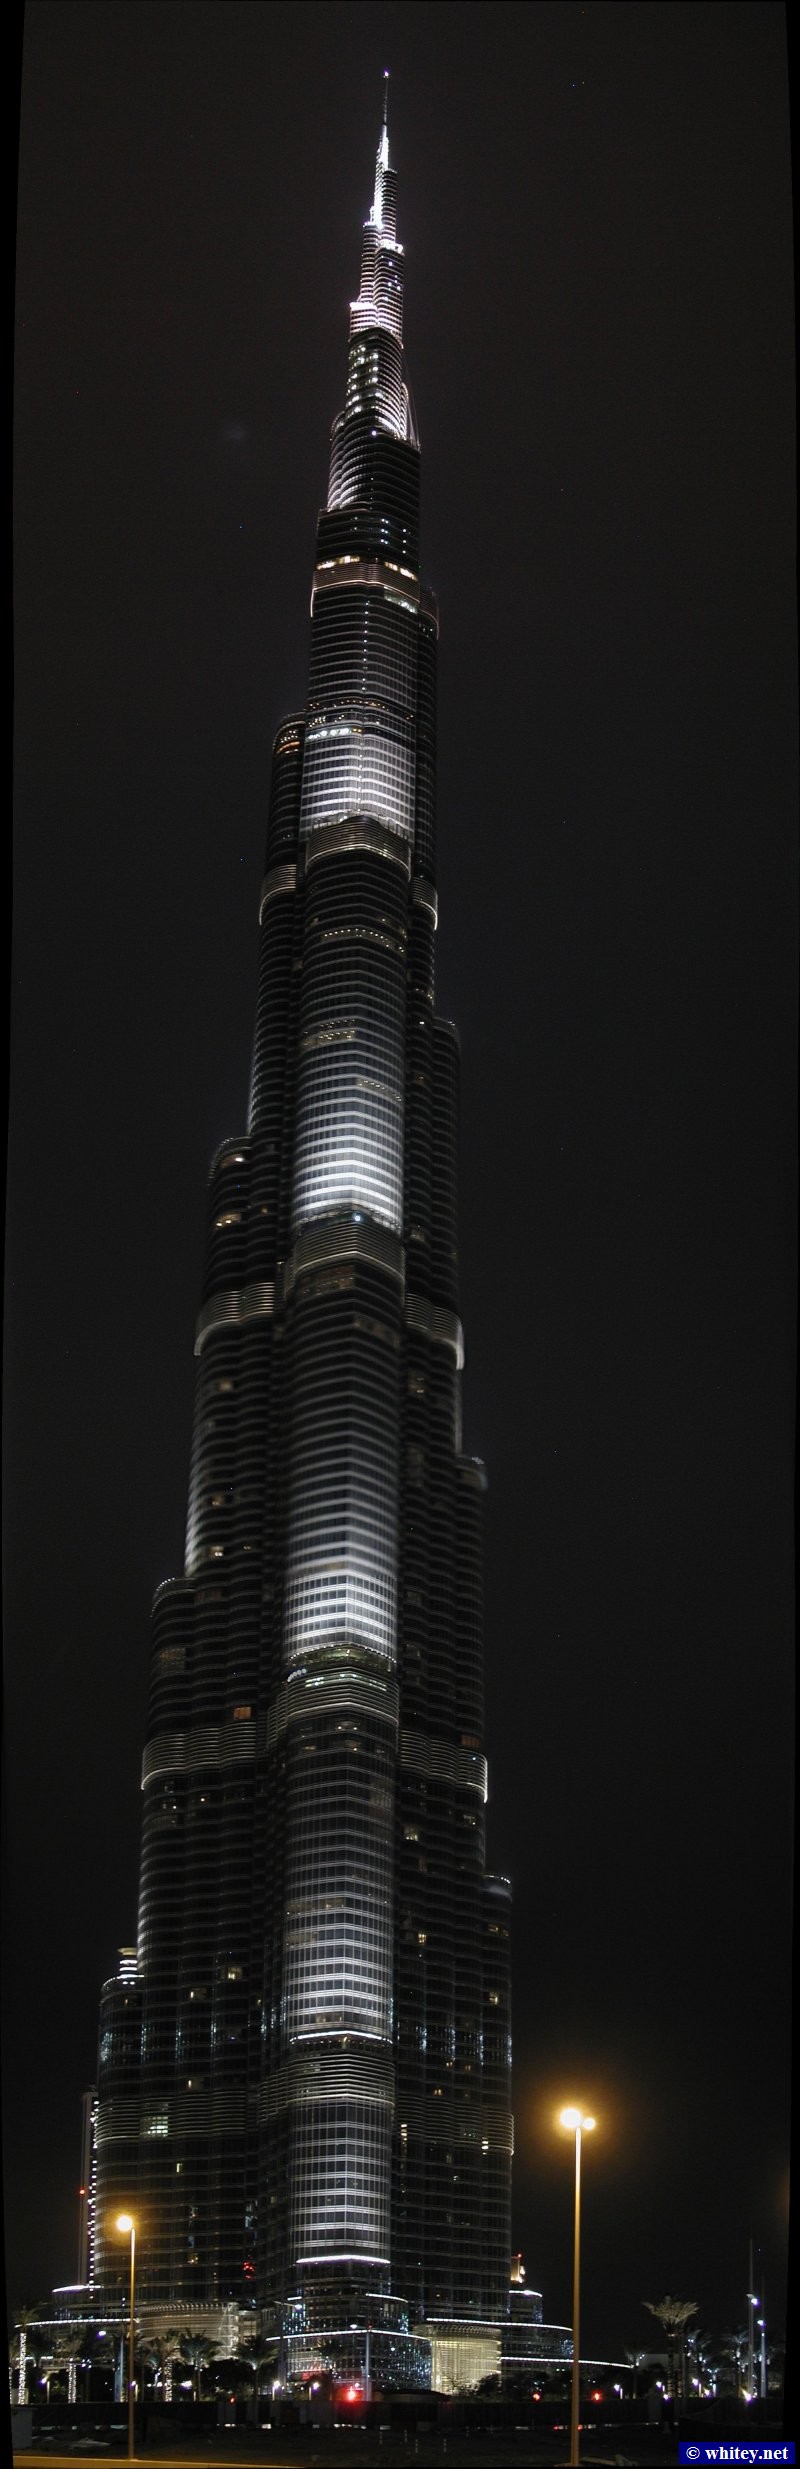 Burj Khalifa, 829m high, Dubai, VAE.